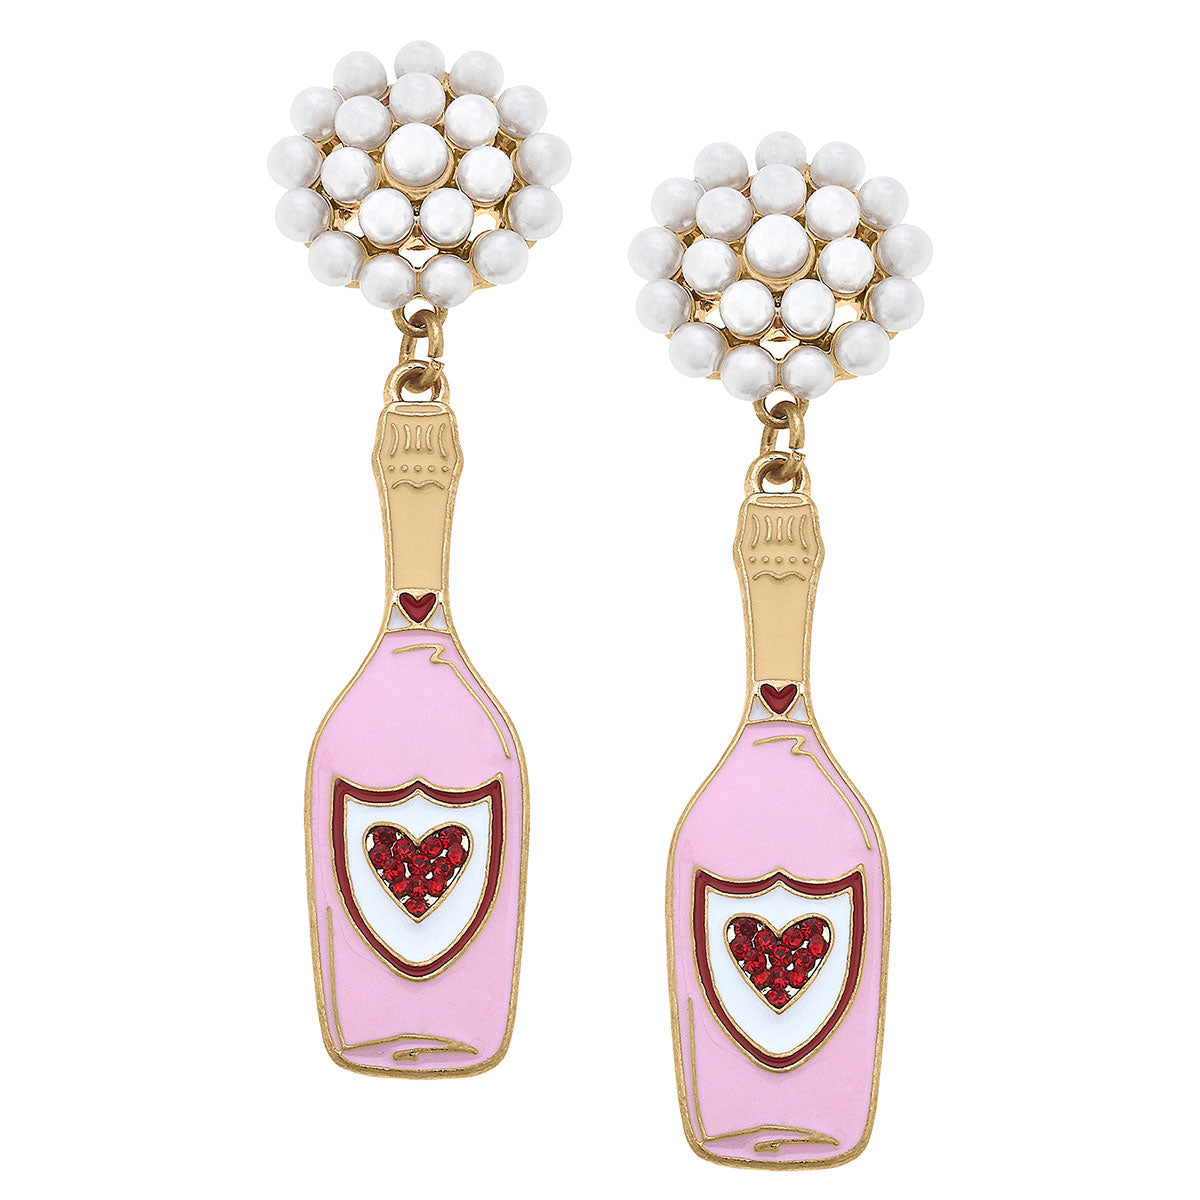 Heart Champagne Bottle Enamel Earrings in Pink & Red